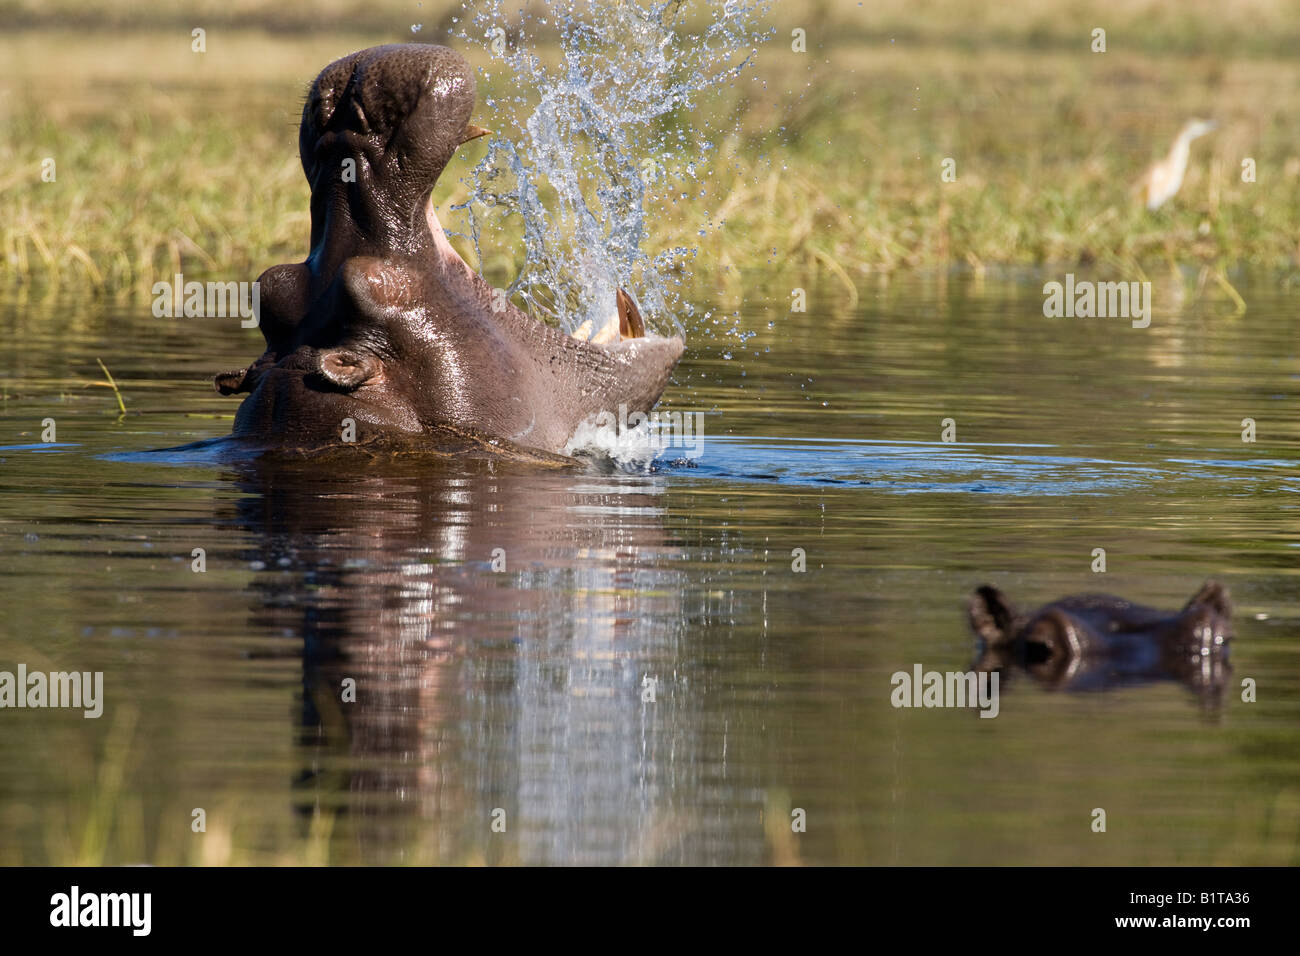 Libre de tête d'hippopotame hors de l'eau d'ouvrir grand la bouche en grand bâillement faisant un grand bruit et de réflexion dans la rivière, réserve de Moremi Delta de l'Okavango au Botswana Banque D'Images